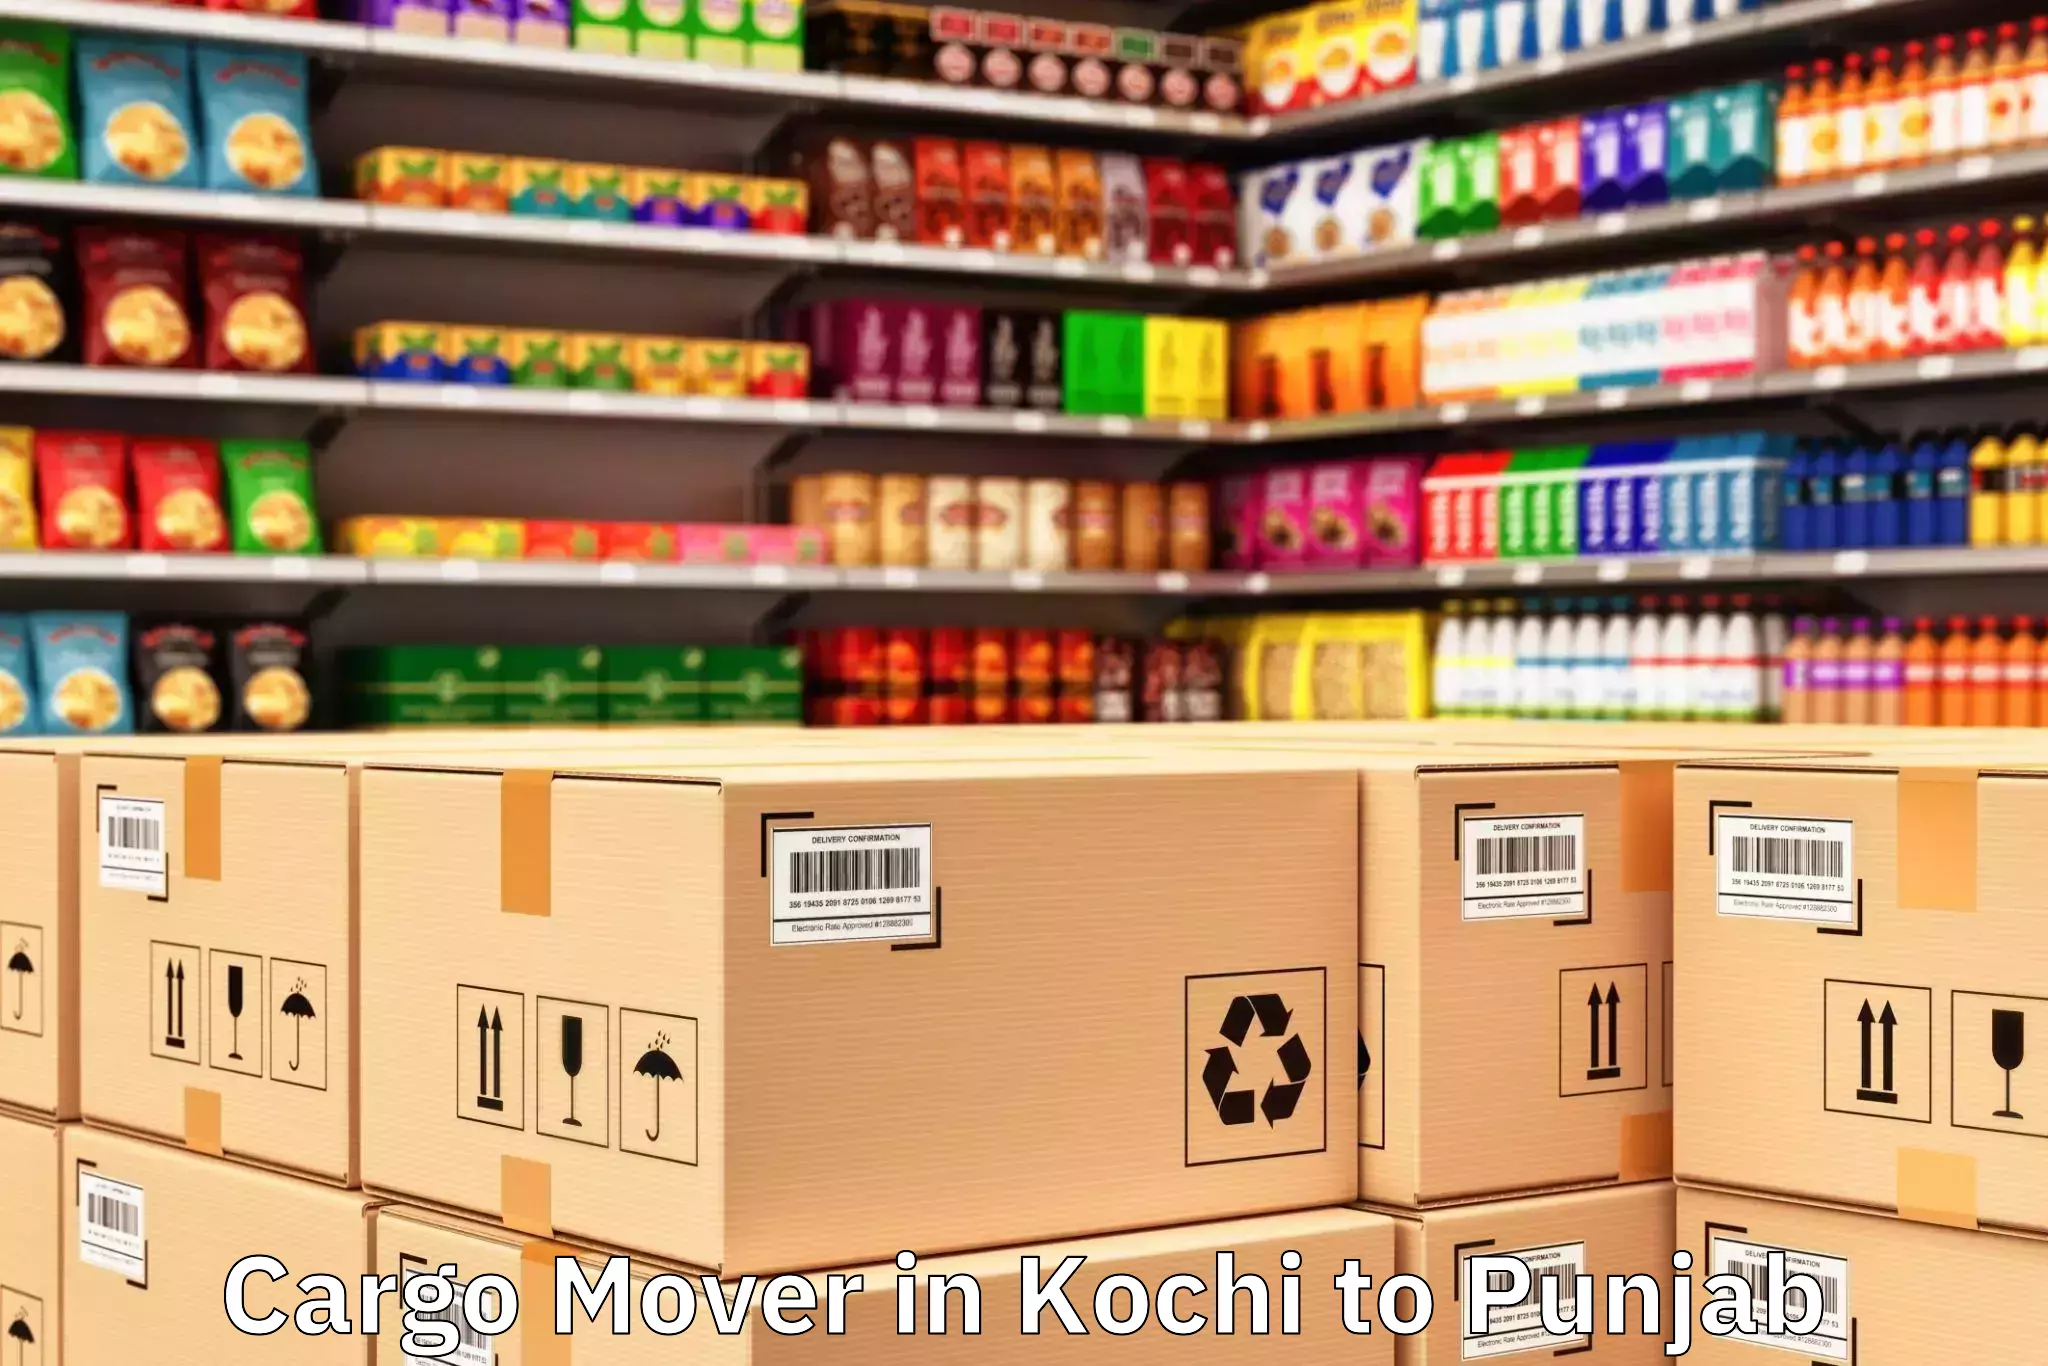 Book Kochi to Malout Cargo Mover